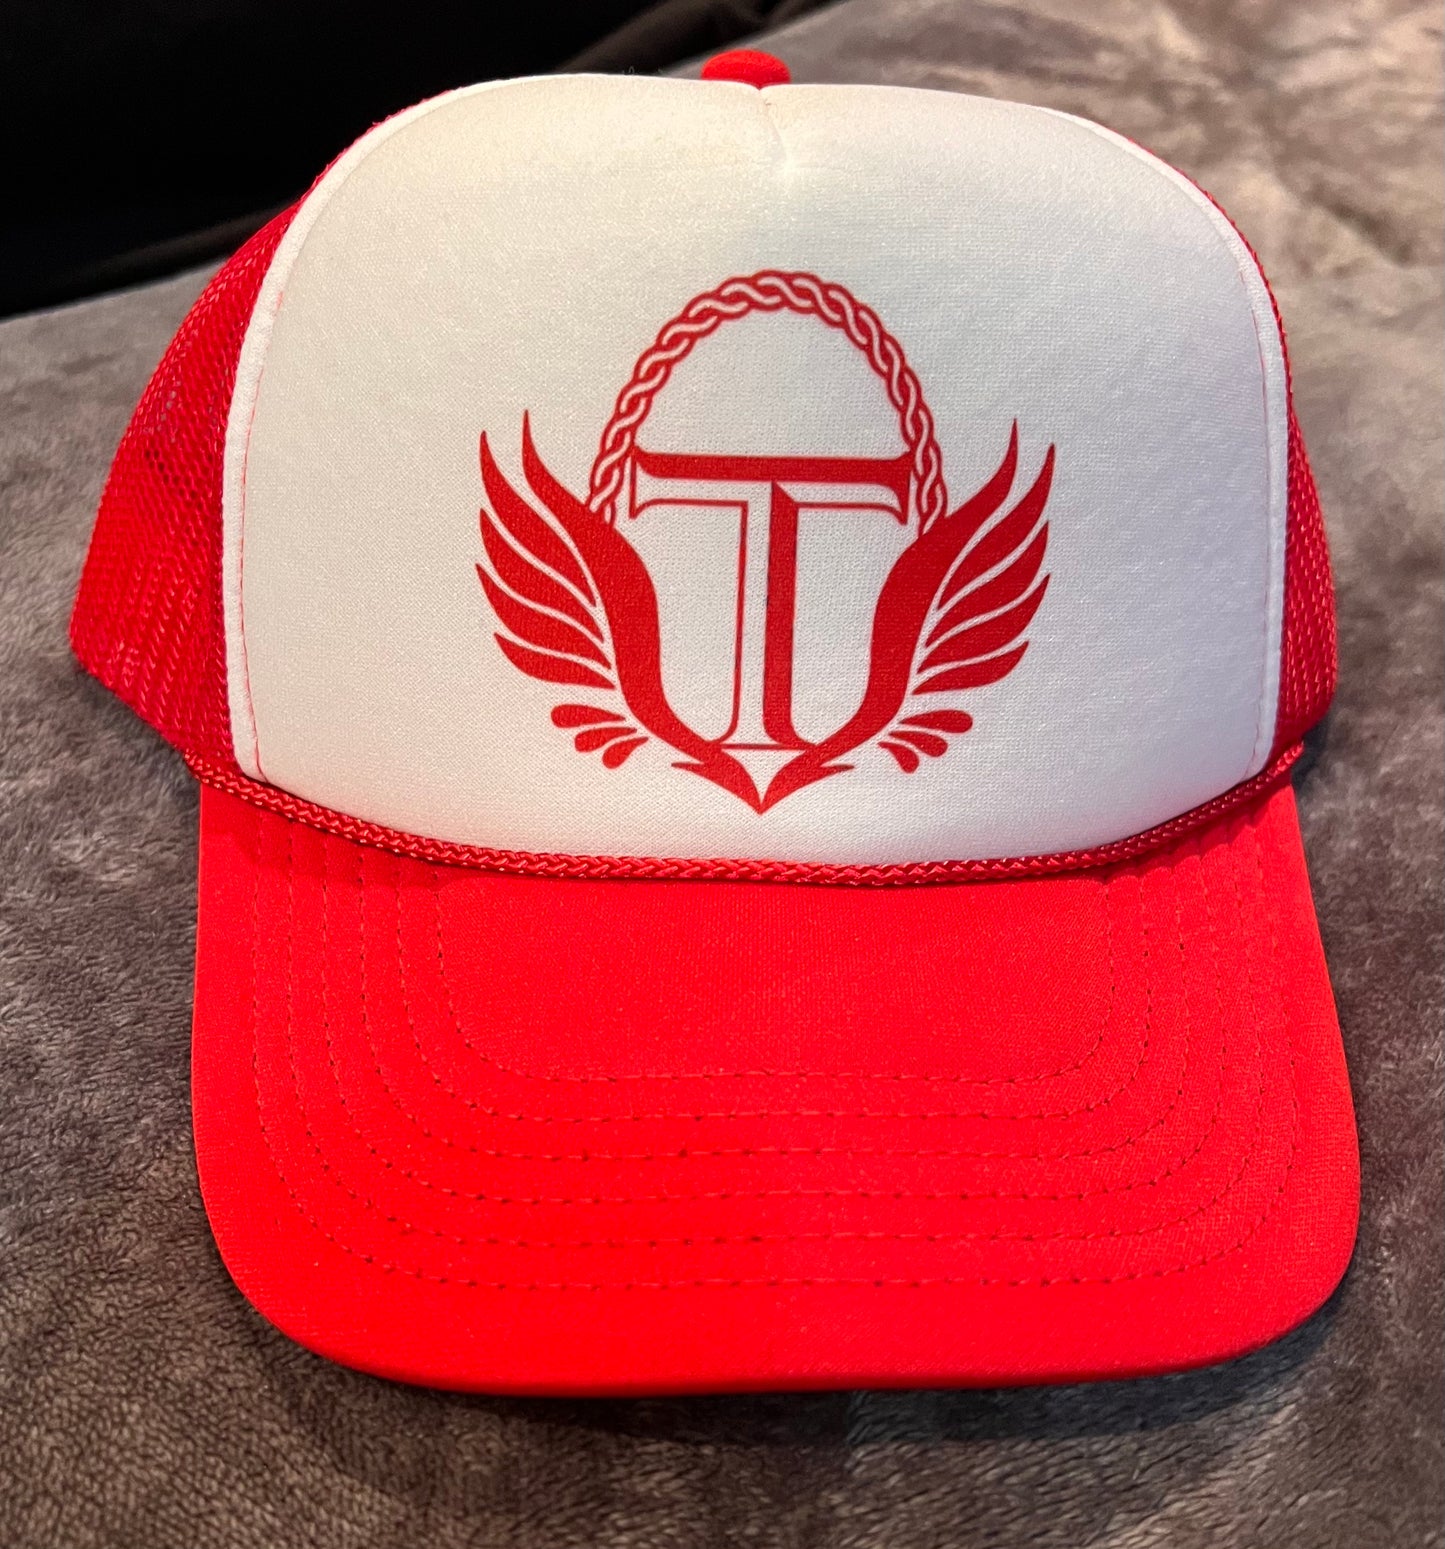 Truth Gear Trucker hats